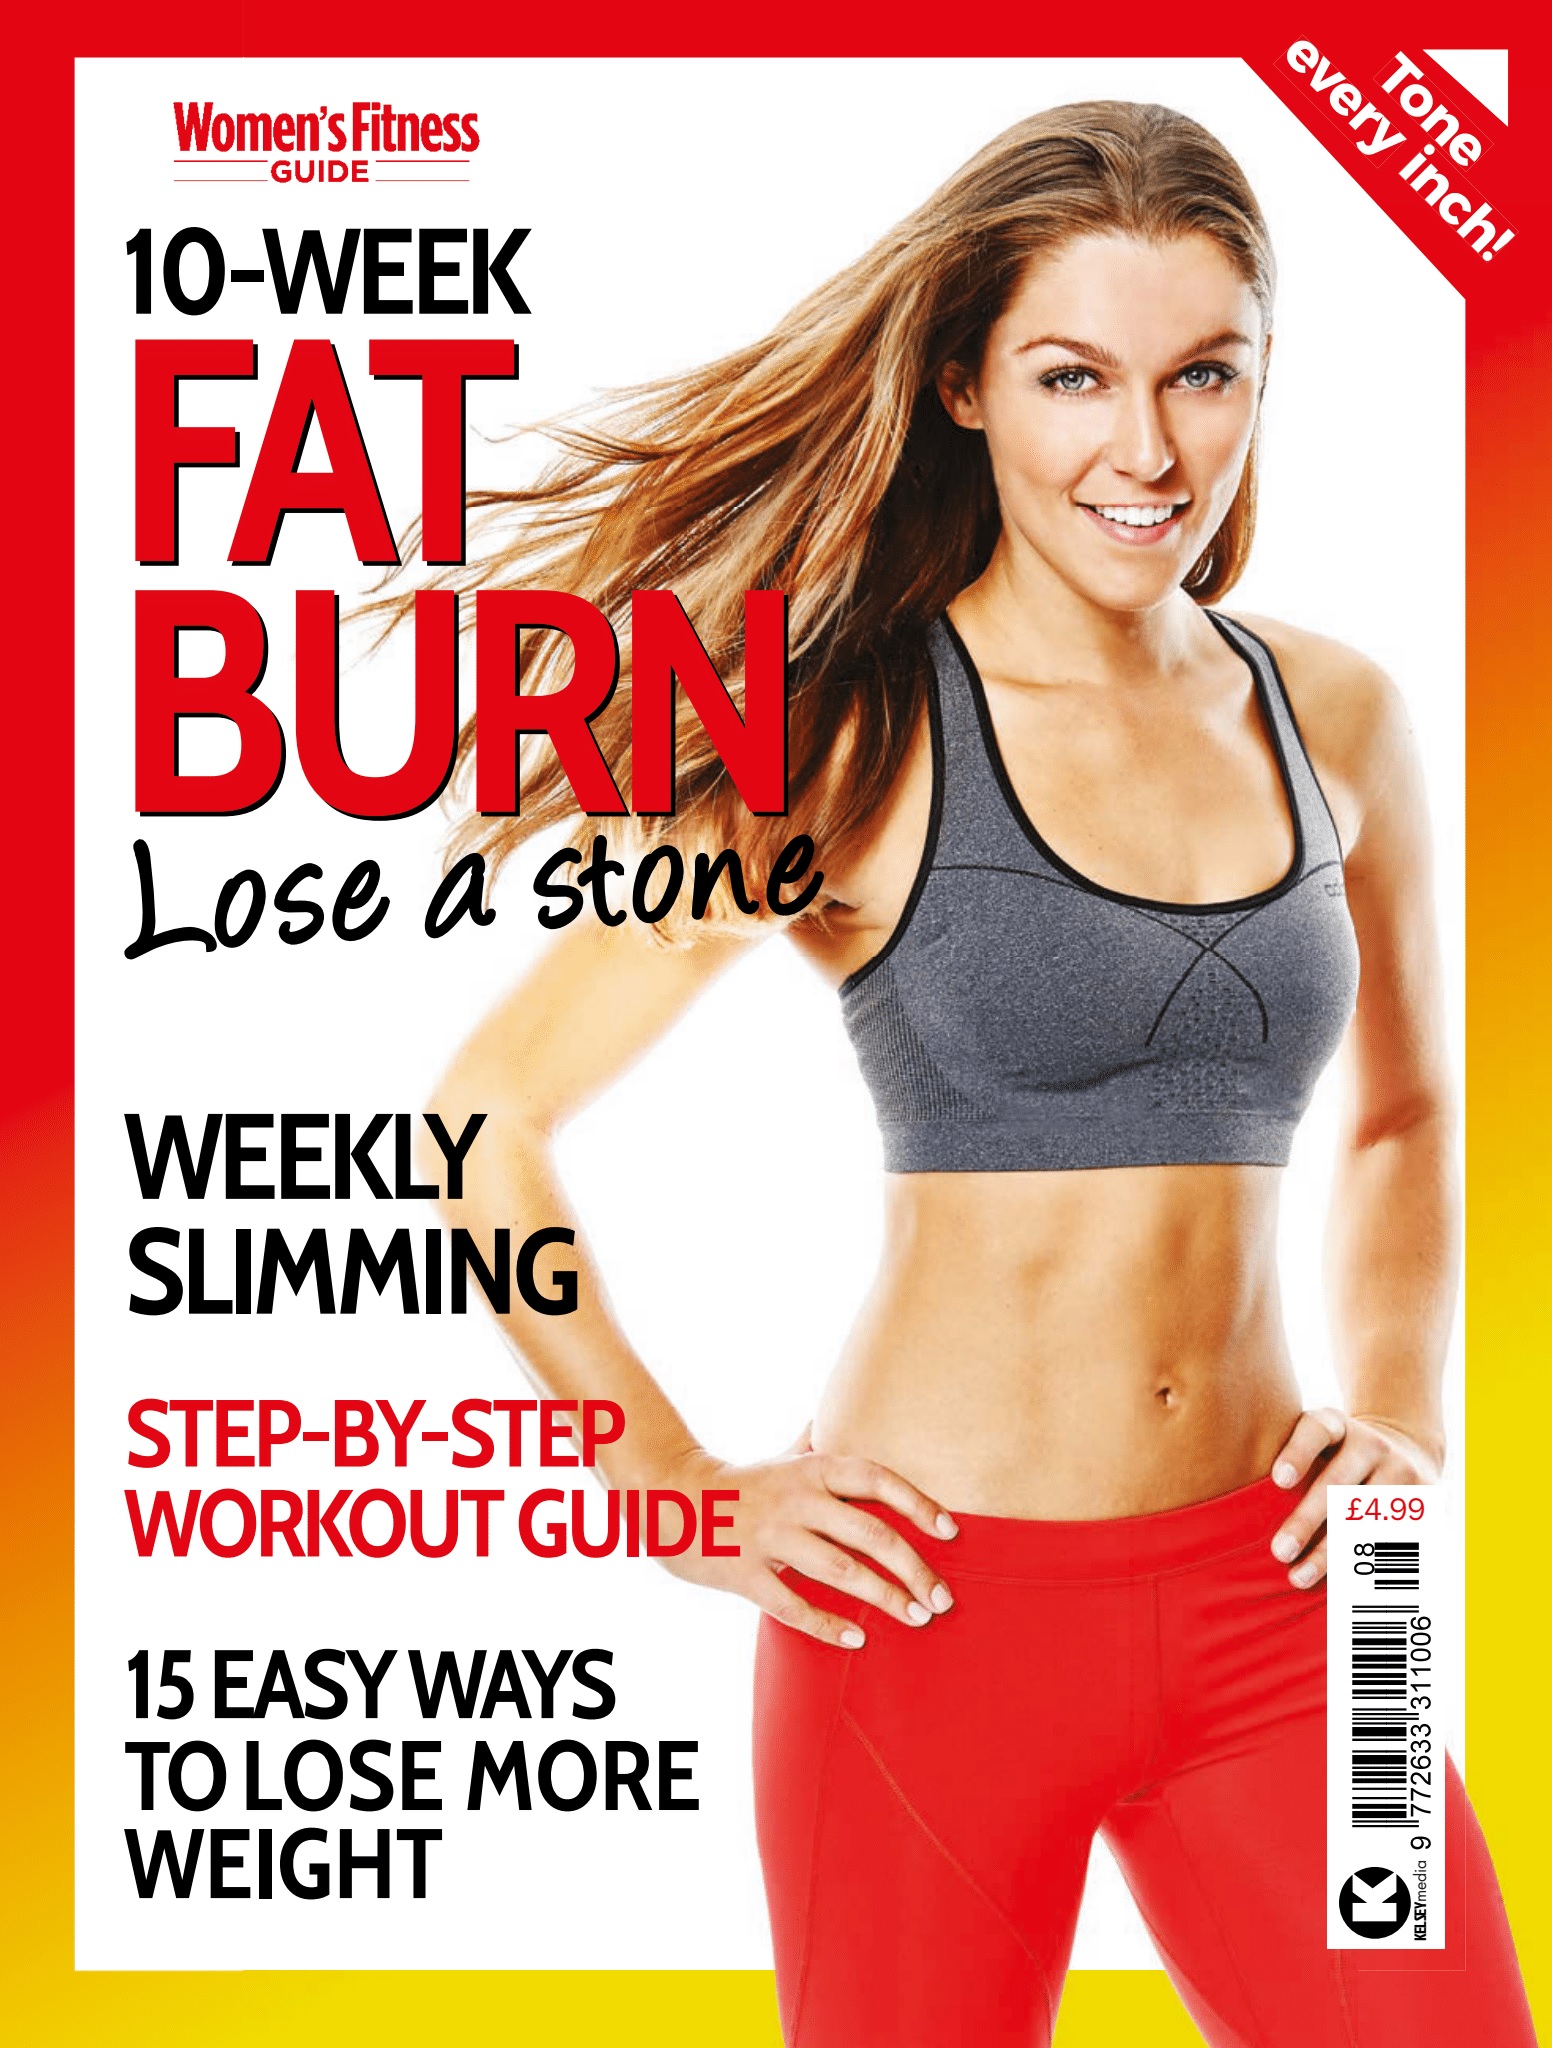 Women's Fitness Guide #8 - Fat Burn